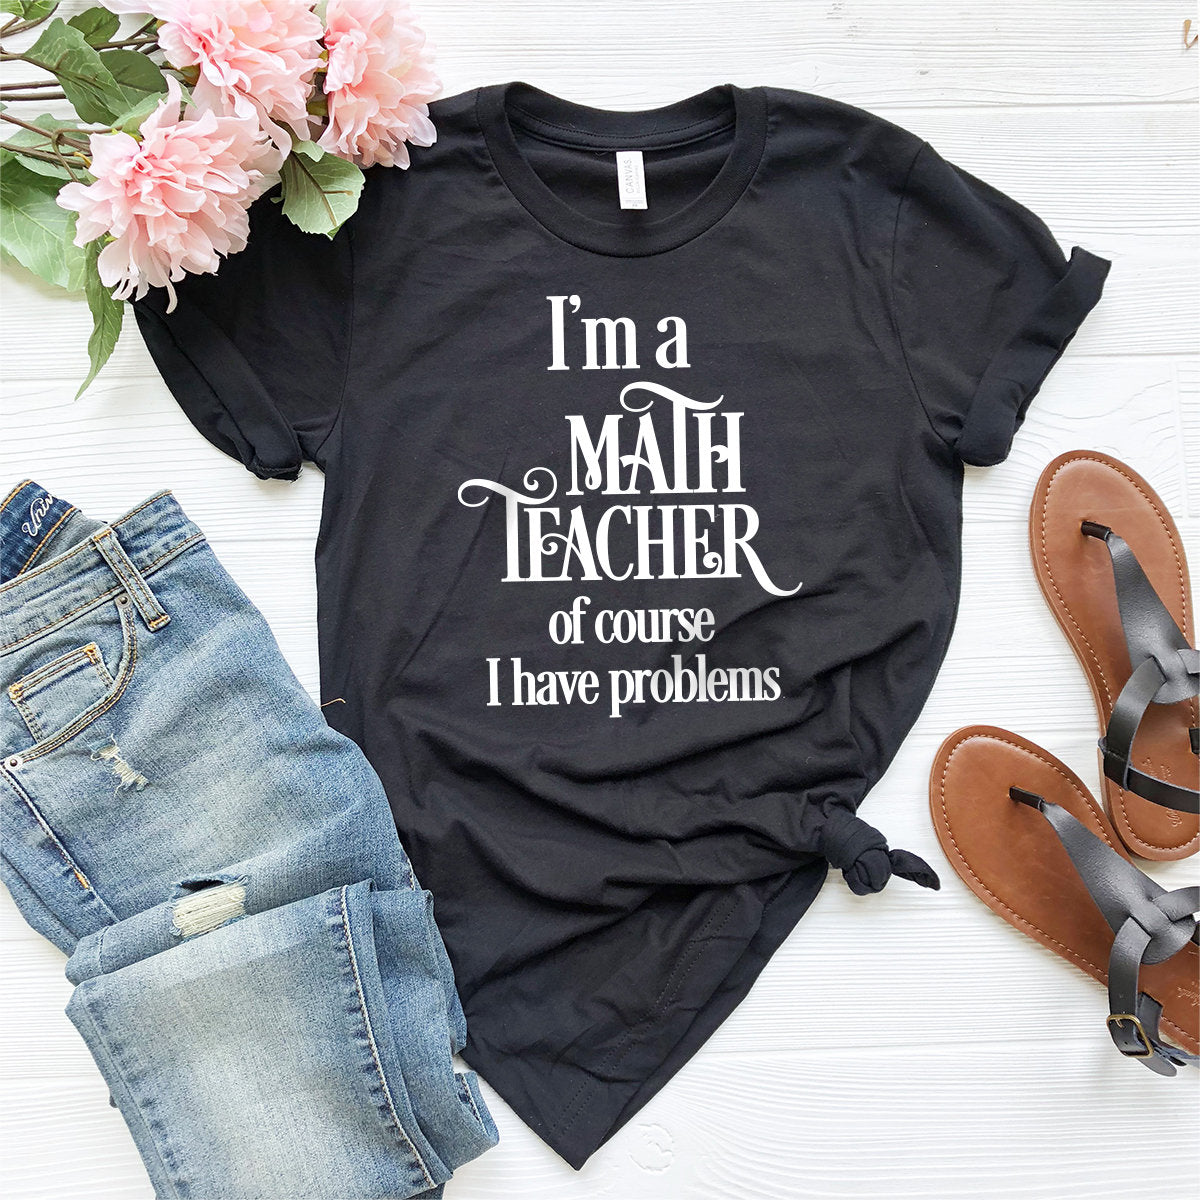 Math Teacher Shirt,Math Teacher Gift,I Am A Math Teacher Shirt,Shirt For Teacher,Teaching Shirts,Tee For Teacher,Math Shirt,Math Gift - Fastdeliverytees.com